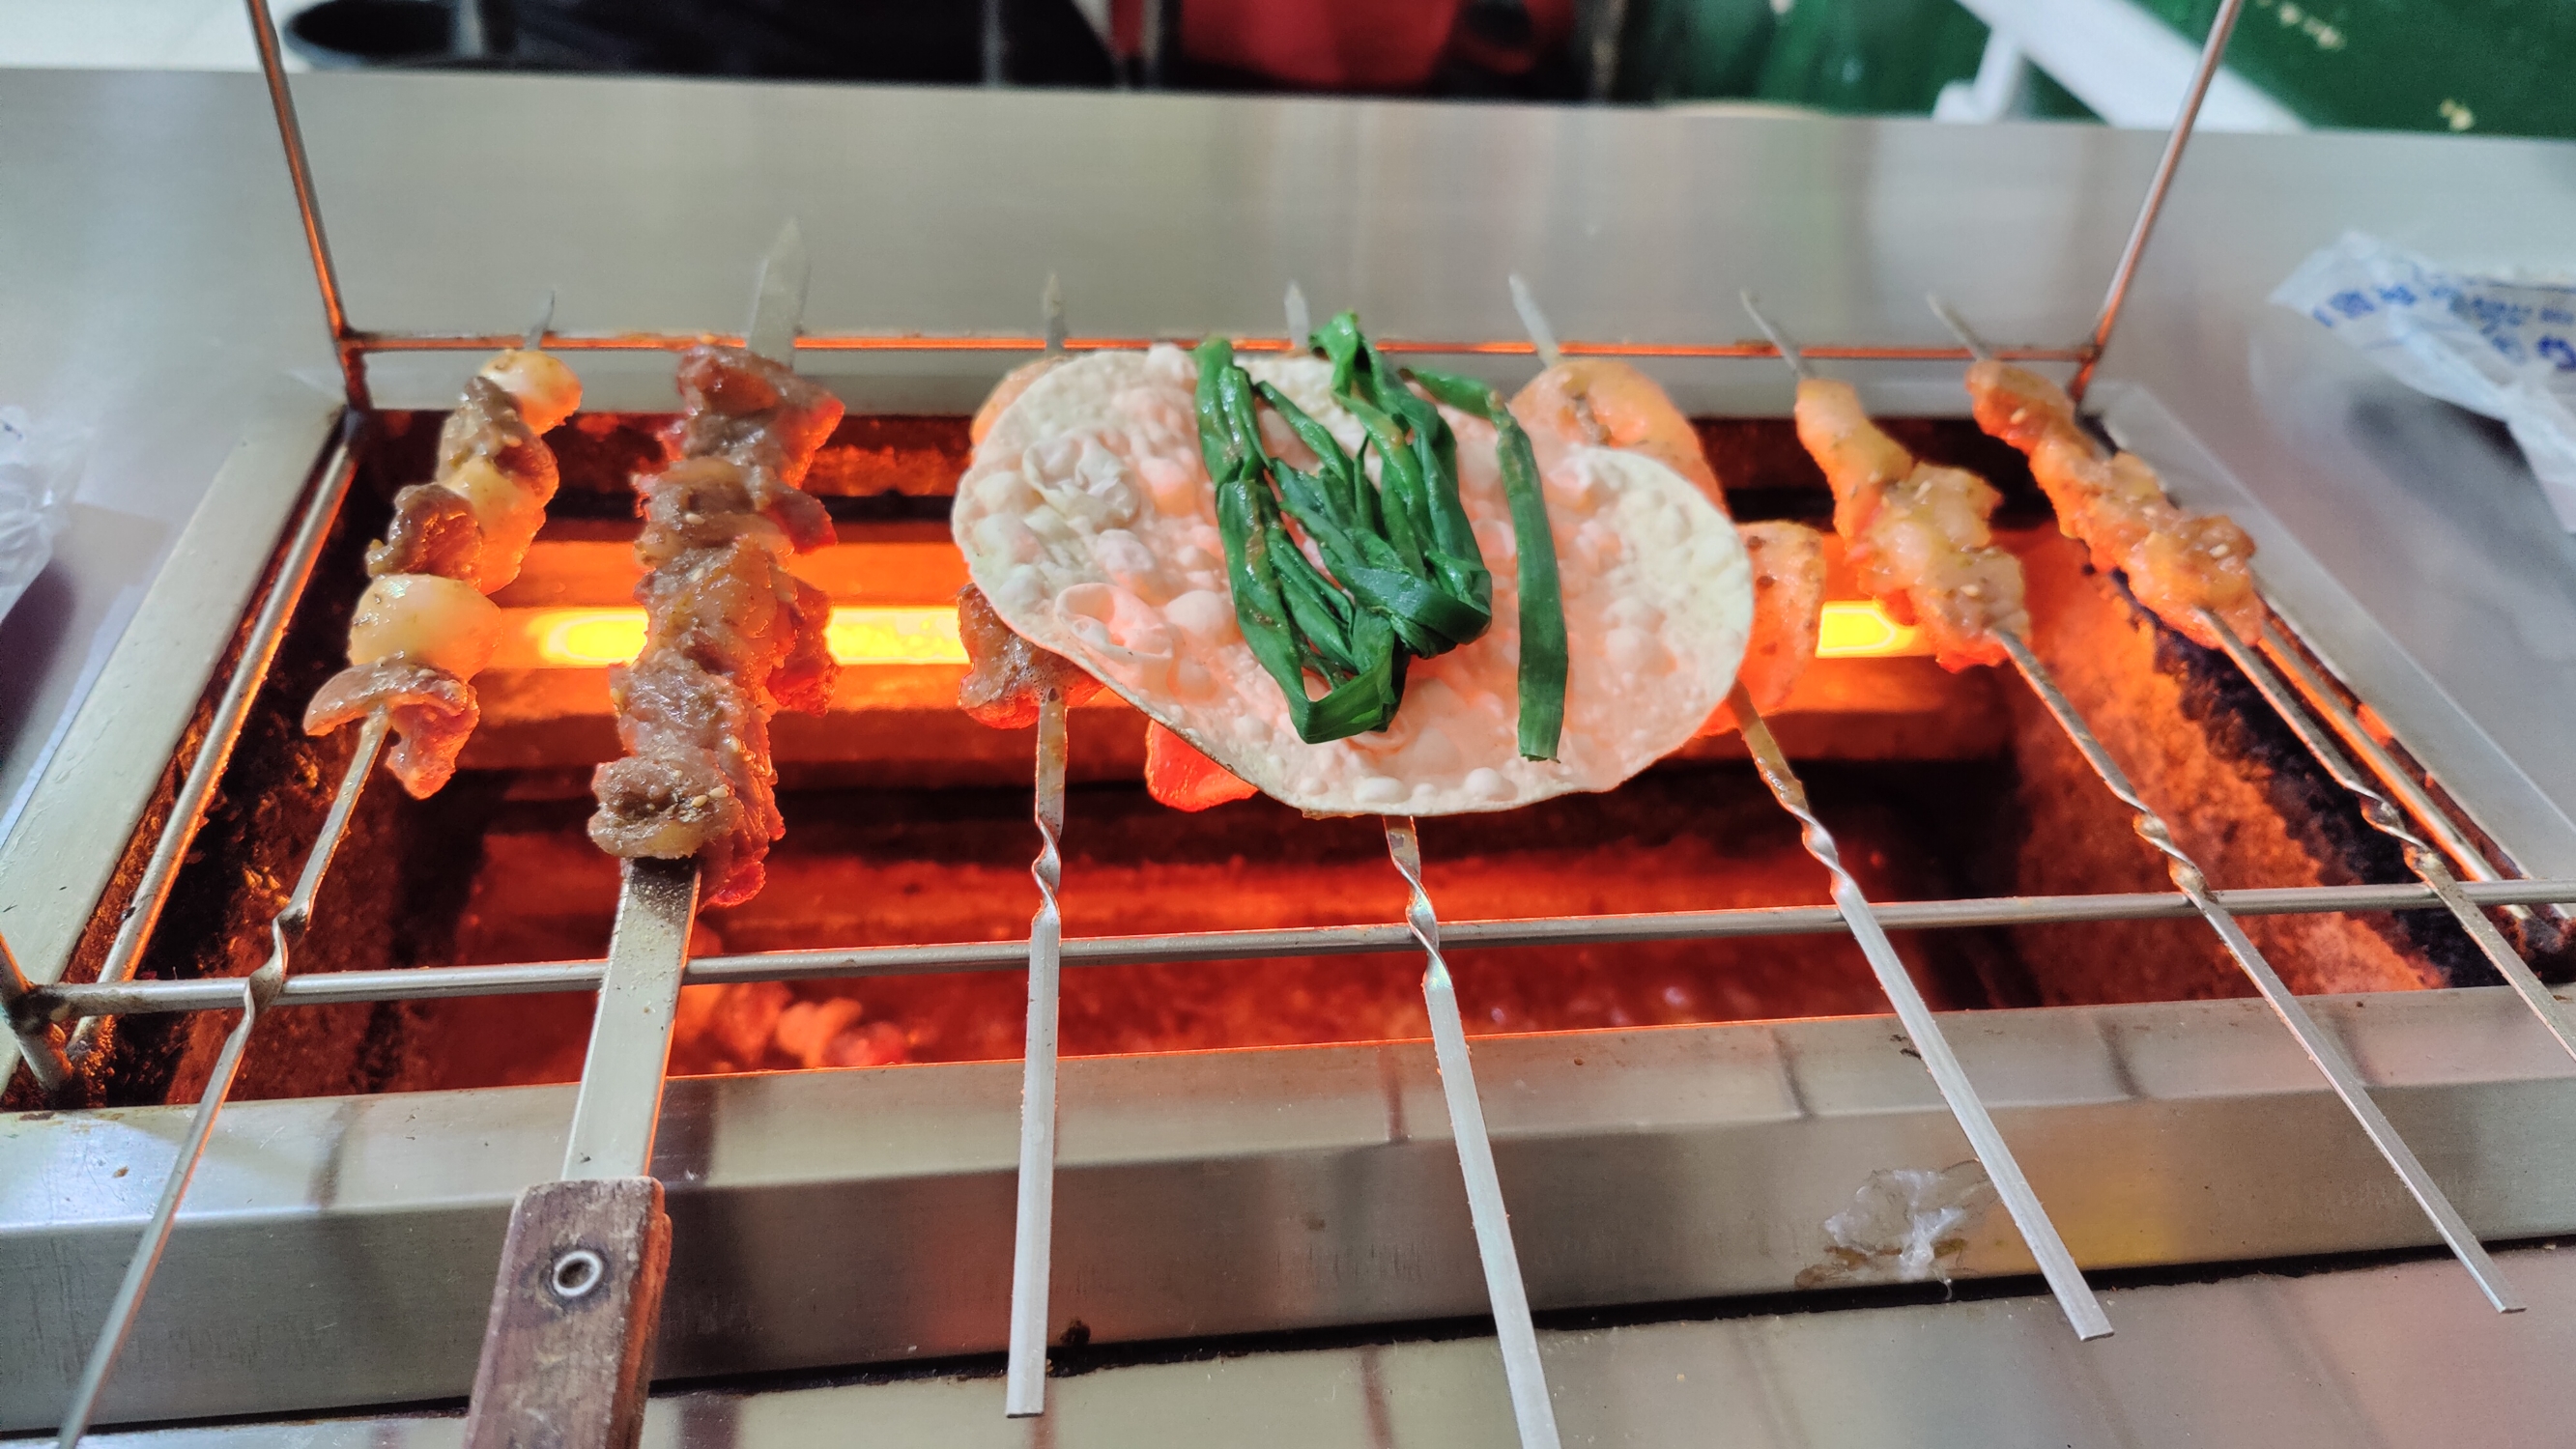 淄博烧烤是山东淄博的一道特色美食，以其独特的口味和制作工艺而著名。以下是对淄博烧烤的评价： 风味独特